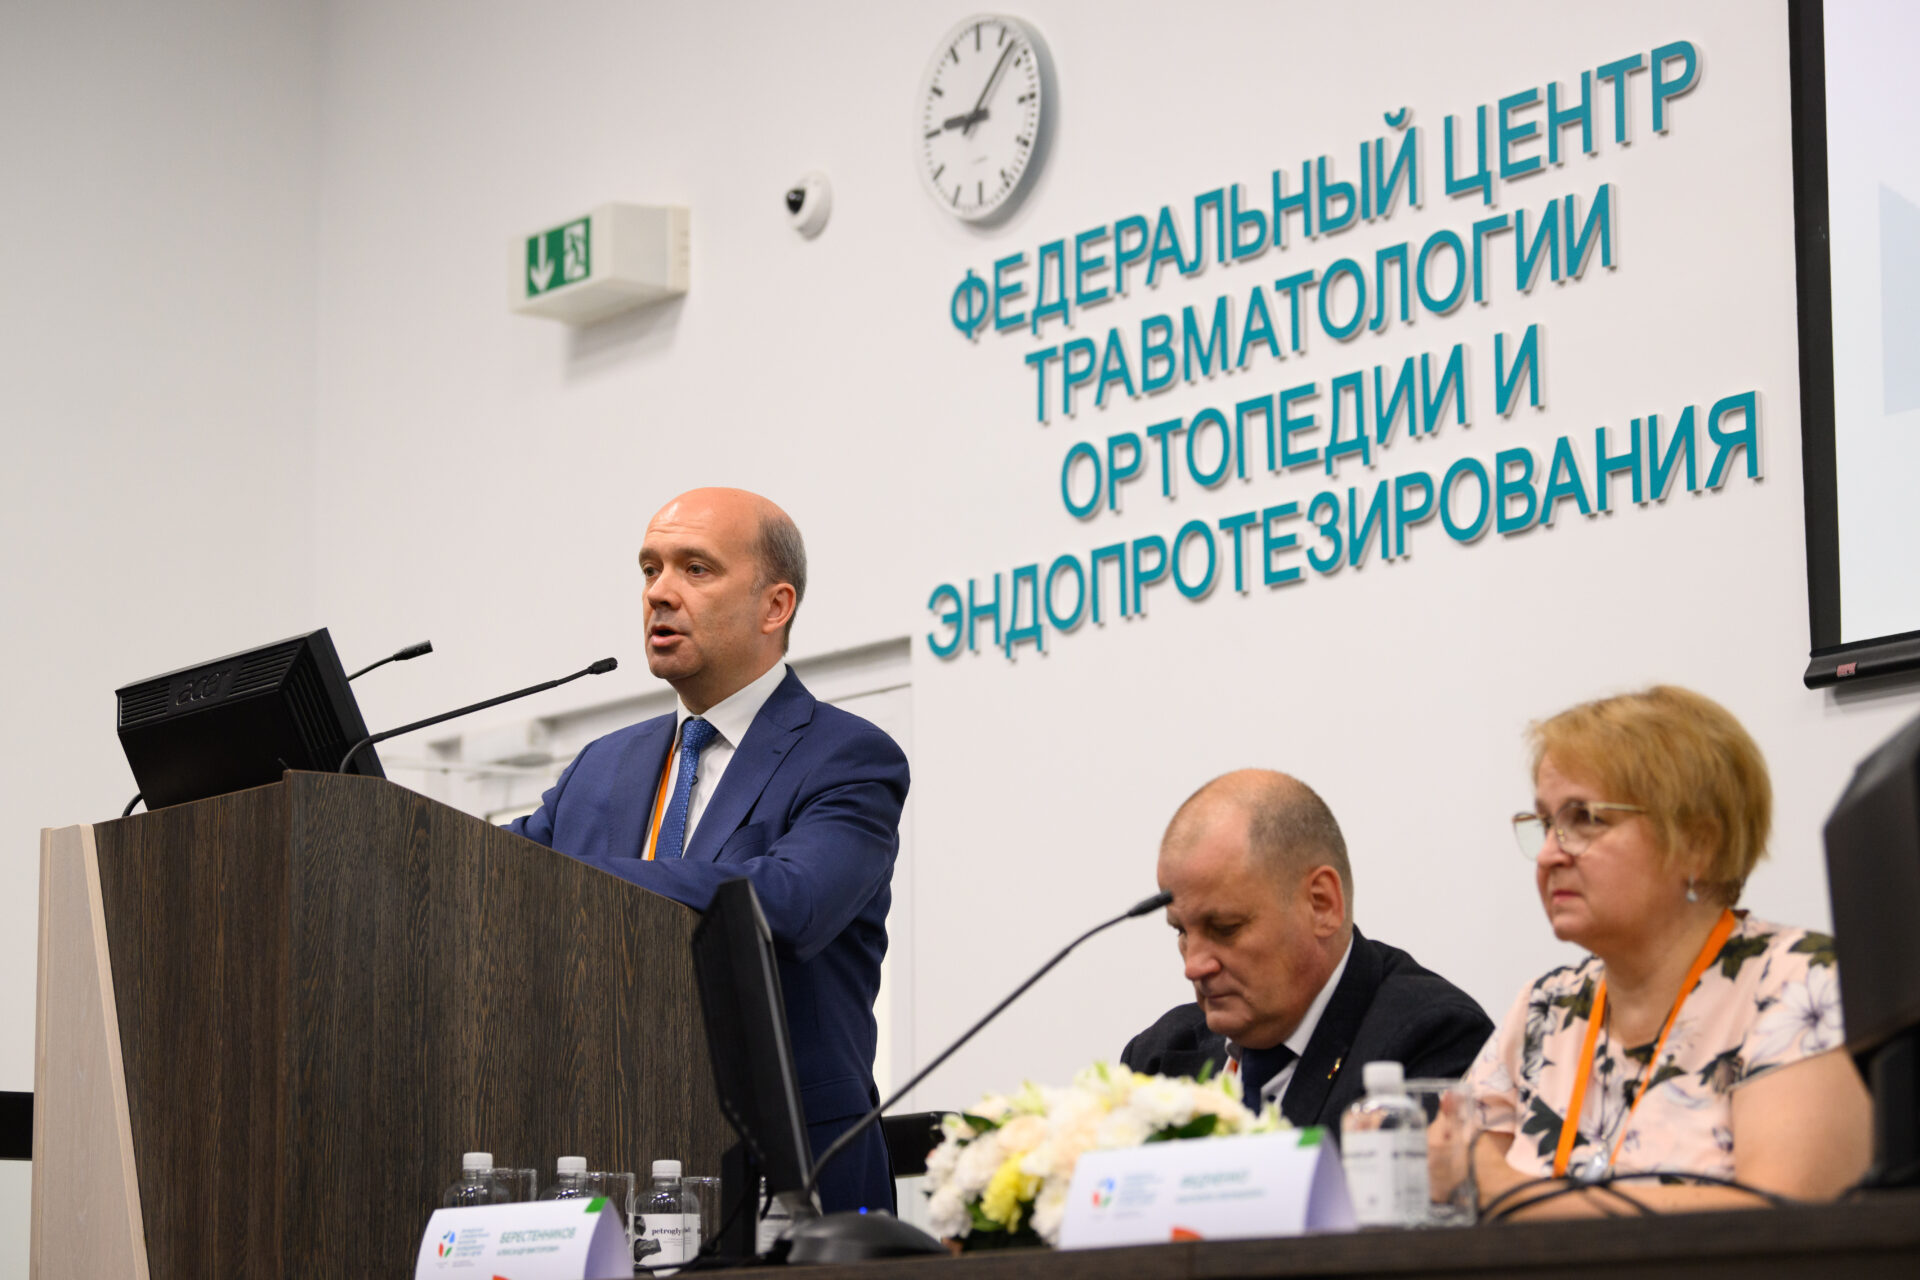 Научно-практический образовательный семинар по теме «Врождённая и приобретённая патология тазобедренного сустава у детей» впервые прошел в Барнауле